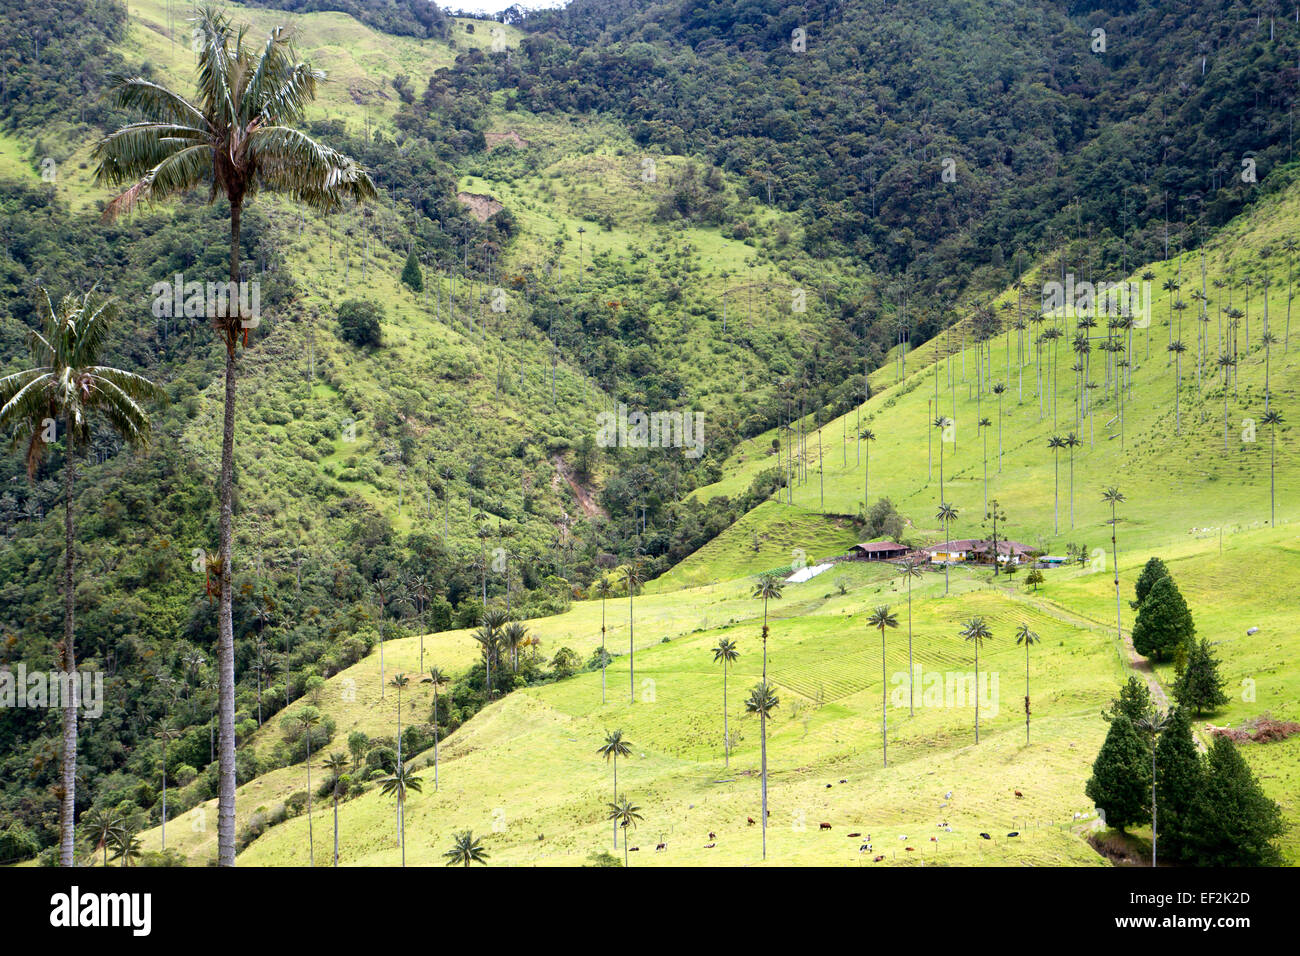 Palmiers de cire - le plus haut du monde palmiers - dans la vallée de Cocora Banque D'Images